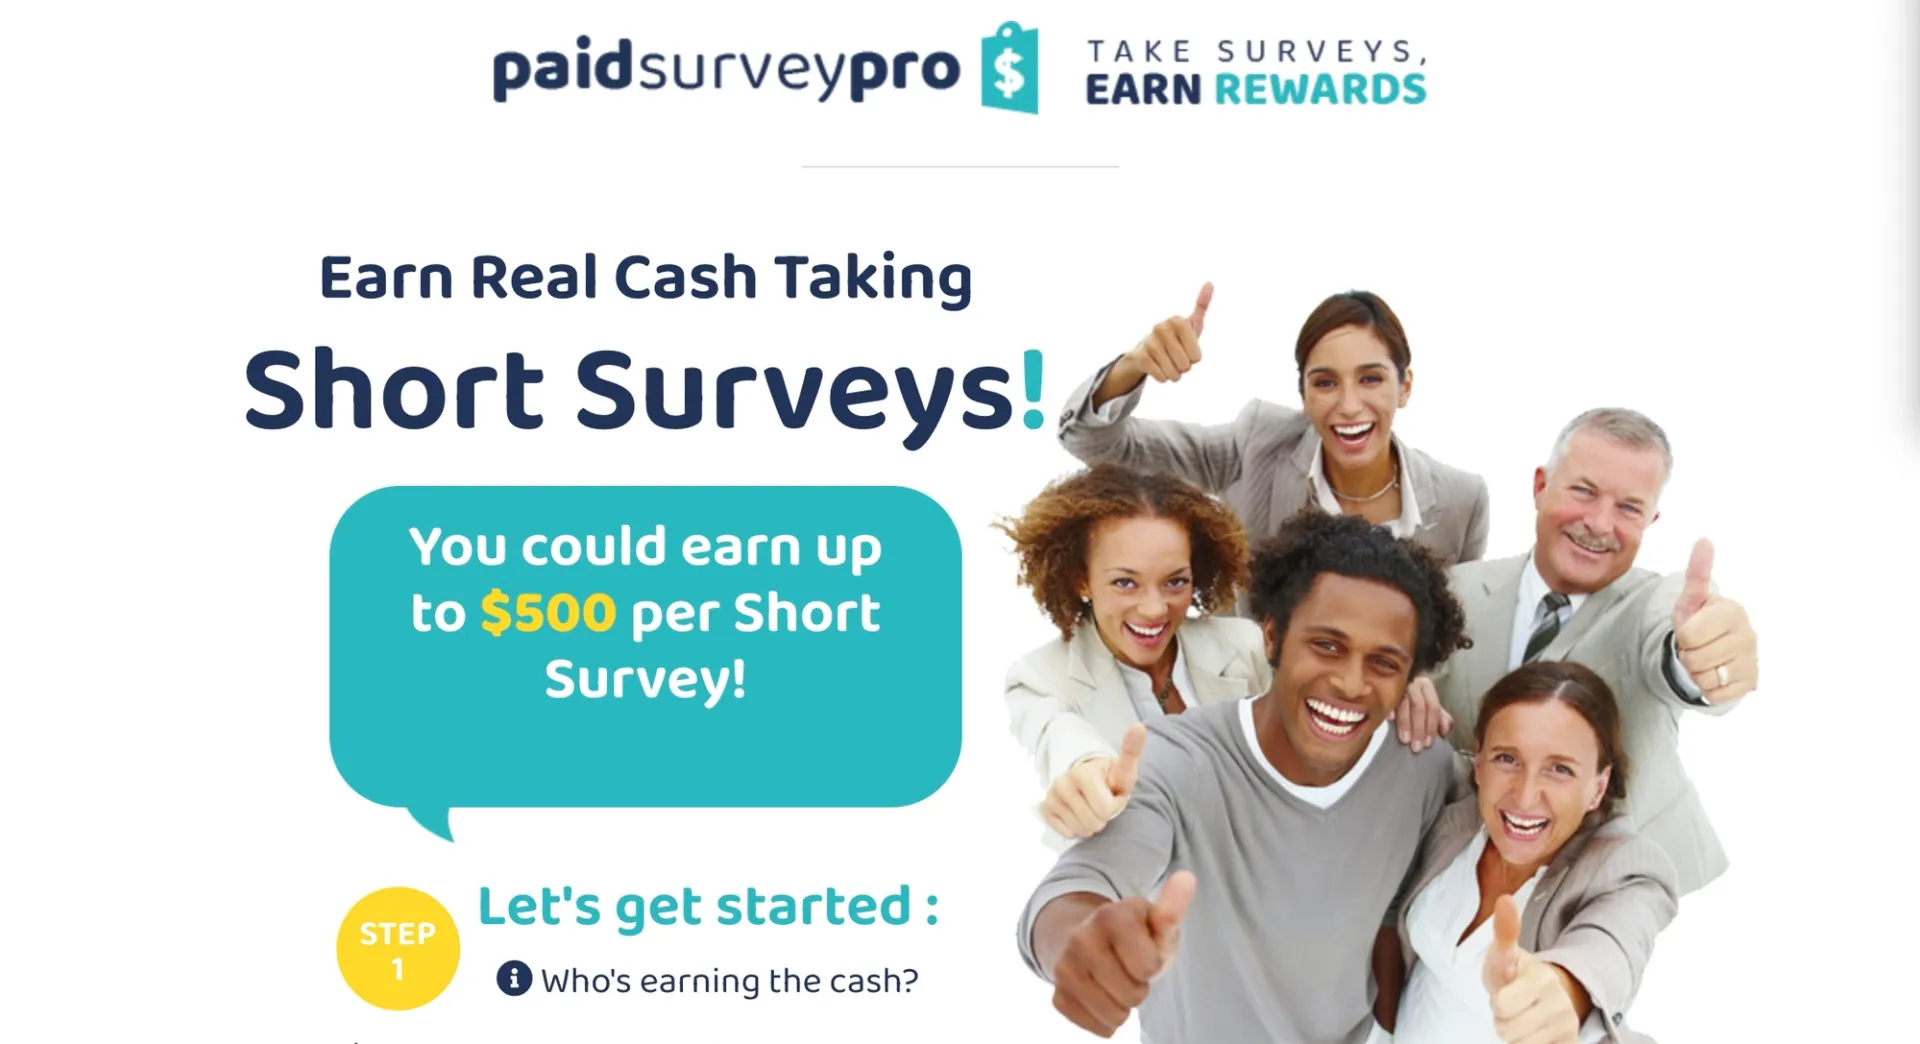 Paid Survey Pro